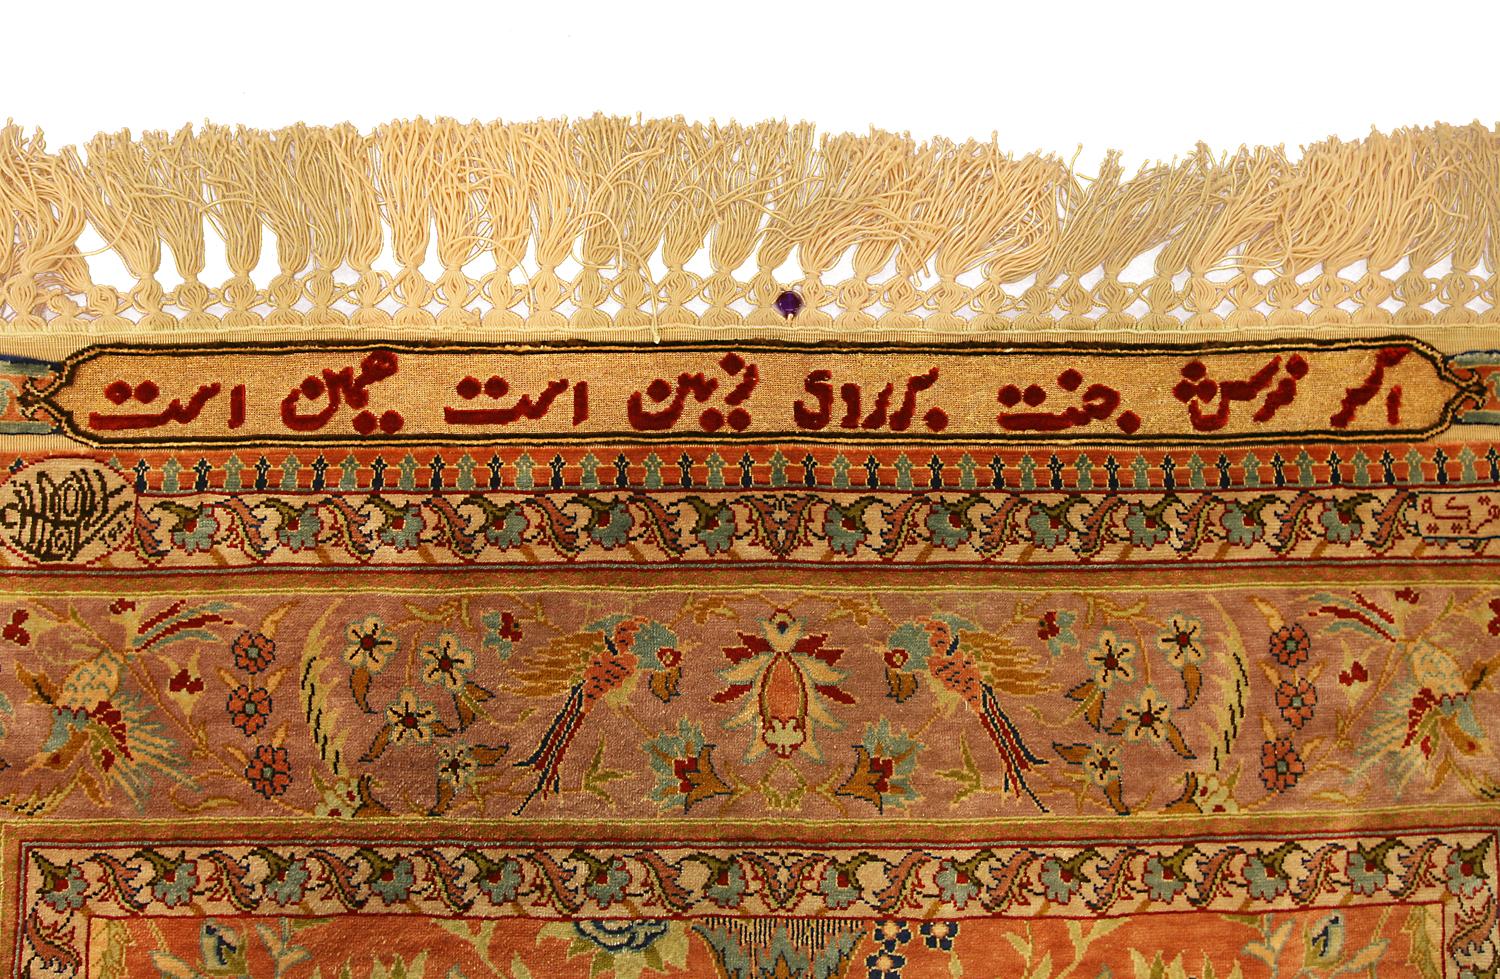 Il s'agit d'un tapis Hereke en soie et métal tissé en Turquie au début du 21e siècle, vers 2000-2010. Ses dimensions sont de 120 x 103 cm. Le champ est orné d'un motif floral sur tout le pourtour, avec un vase central contenant des fleurs épanouies,